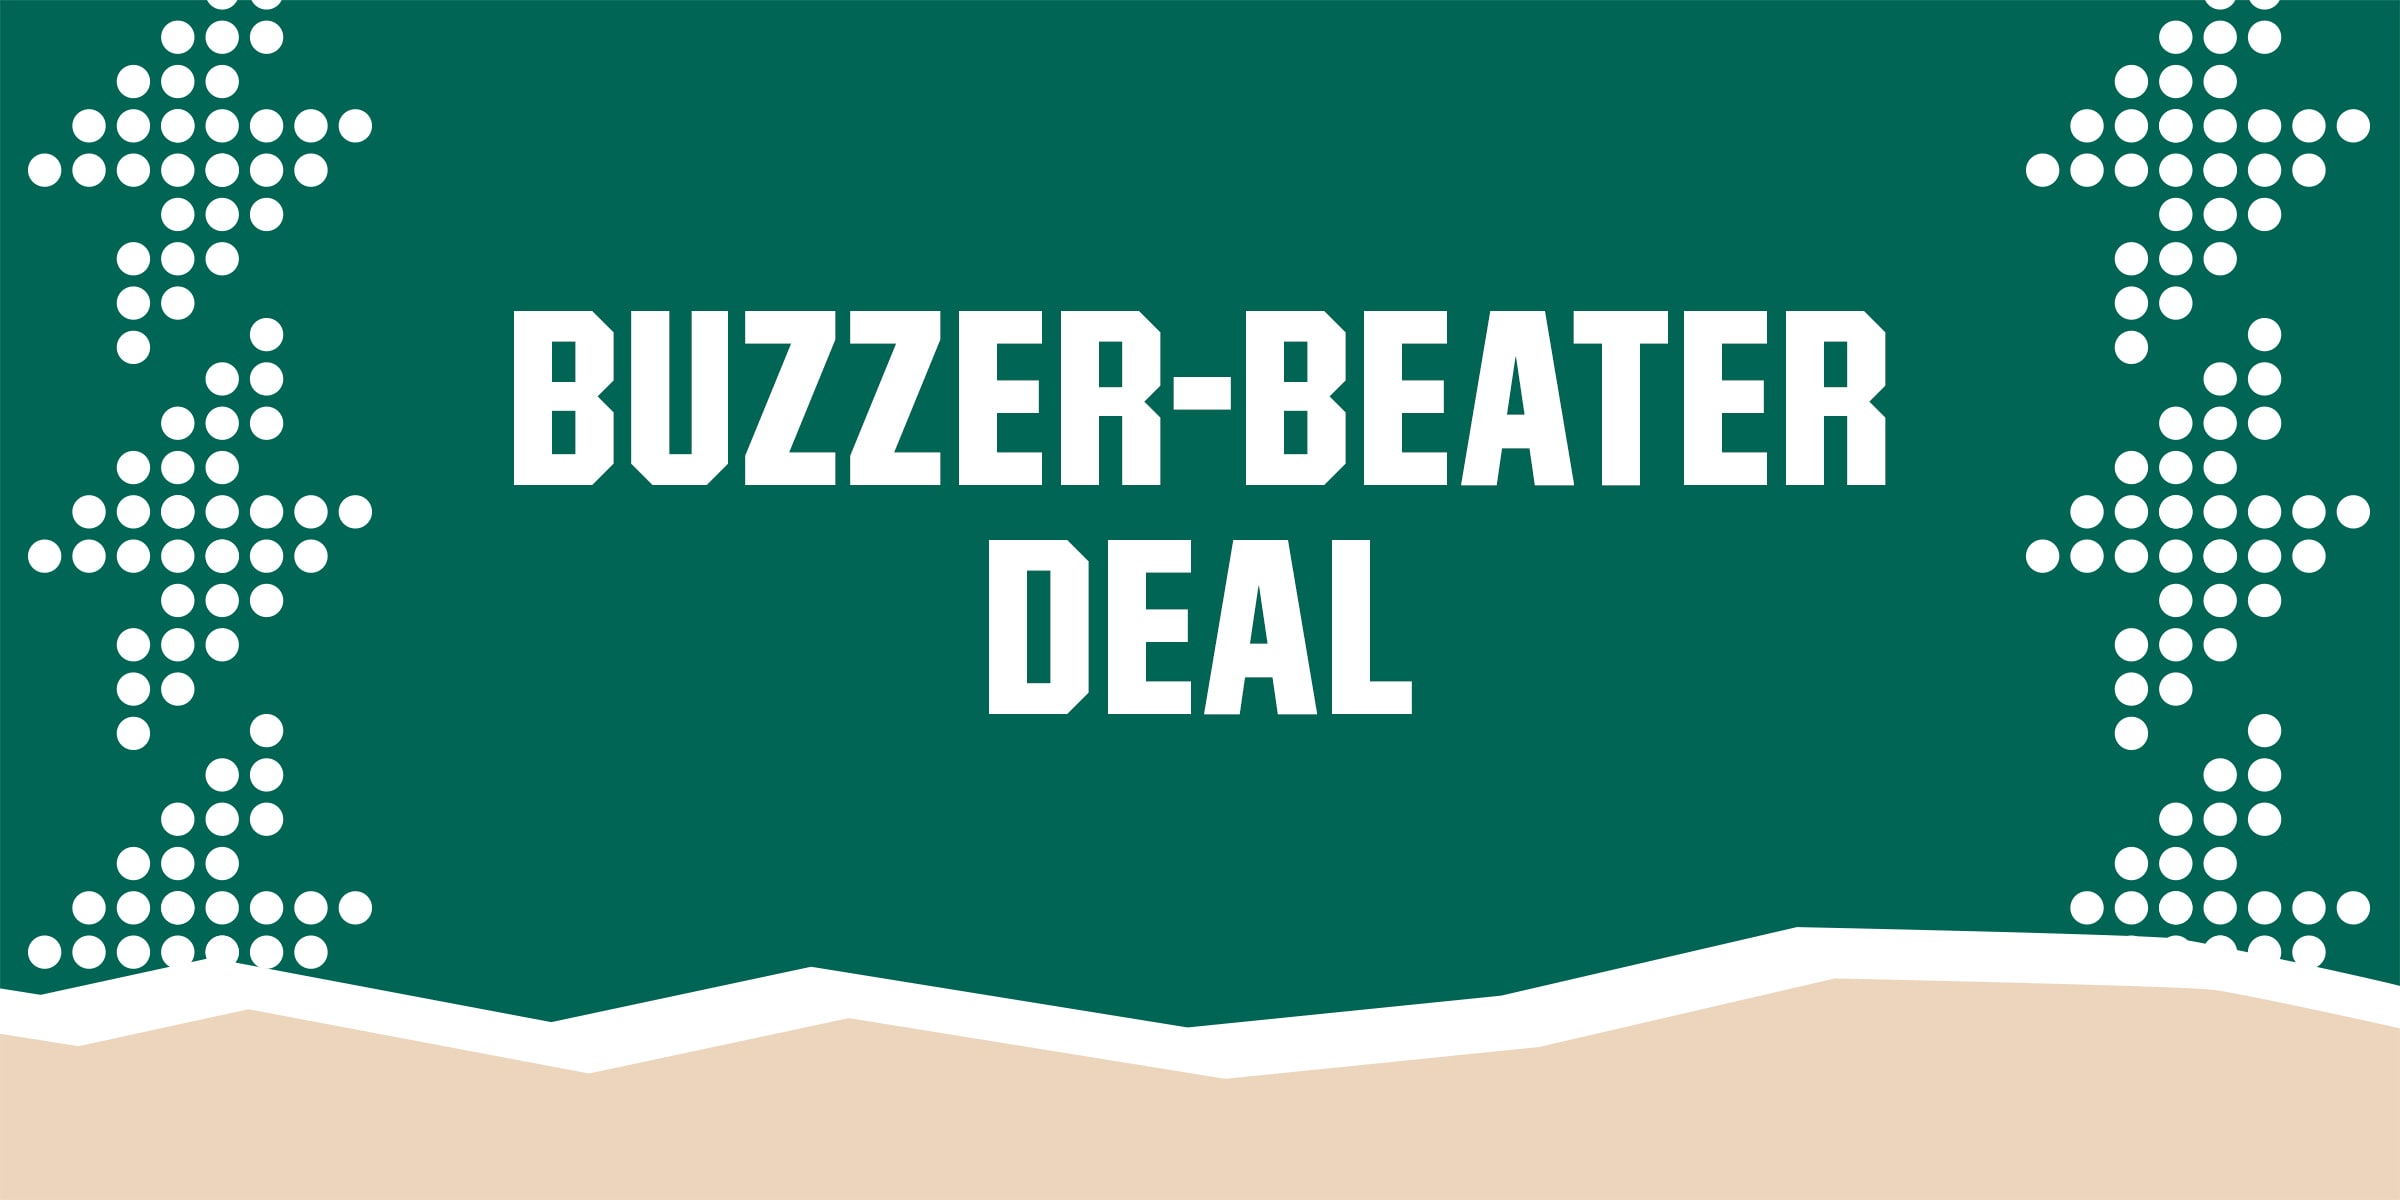 Buzzer-beater deal